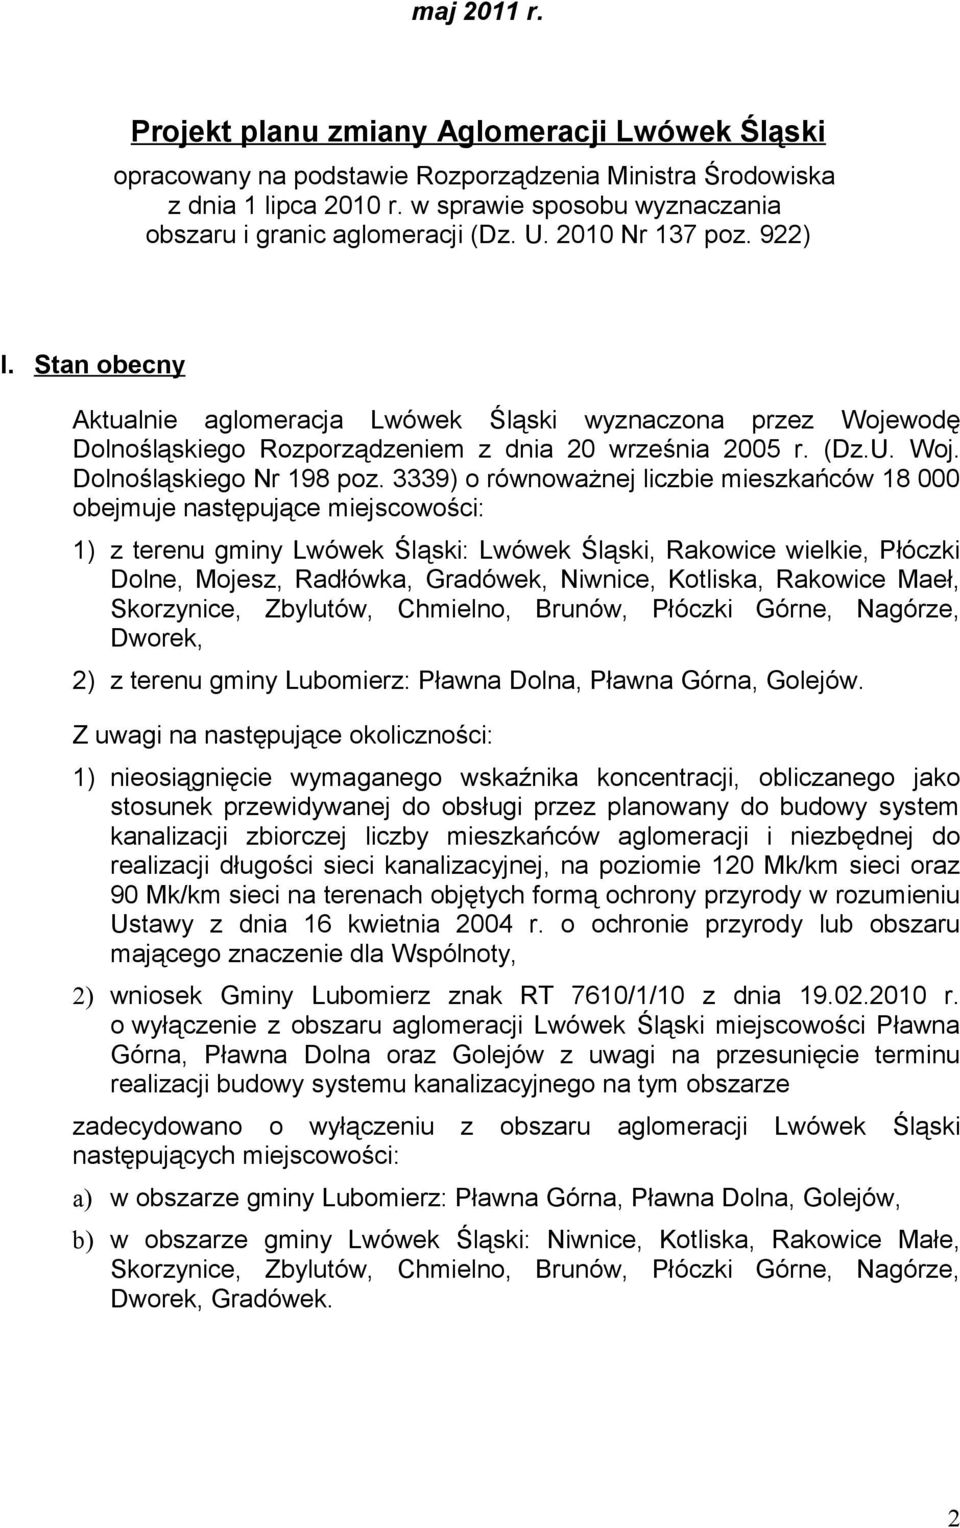 Stan obecny Aktualnie aglomeracja Lwówek Śląski wyznaczona przez Wojewodę Dolnośląskiego Rozporządzeniem z dnia 20 września 2005 r. (Dz.U. Woj. Dolnośląskiego Nr 198 poz.